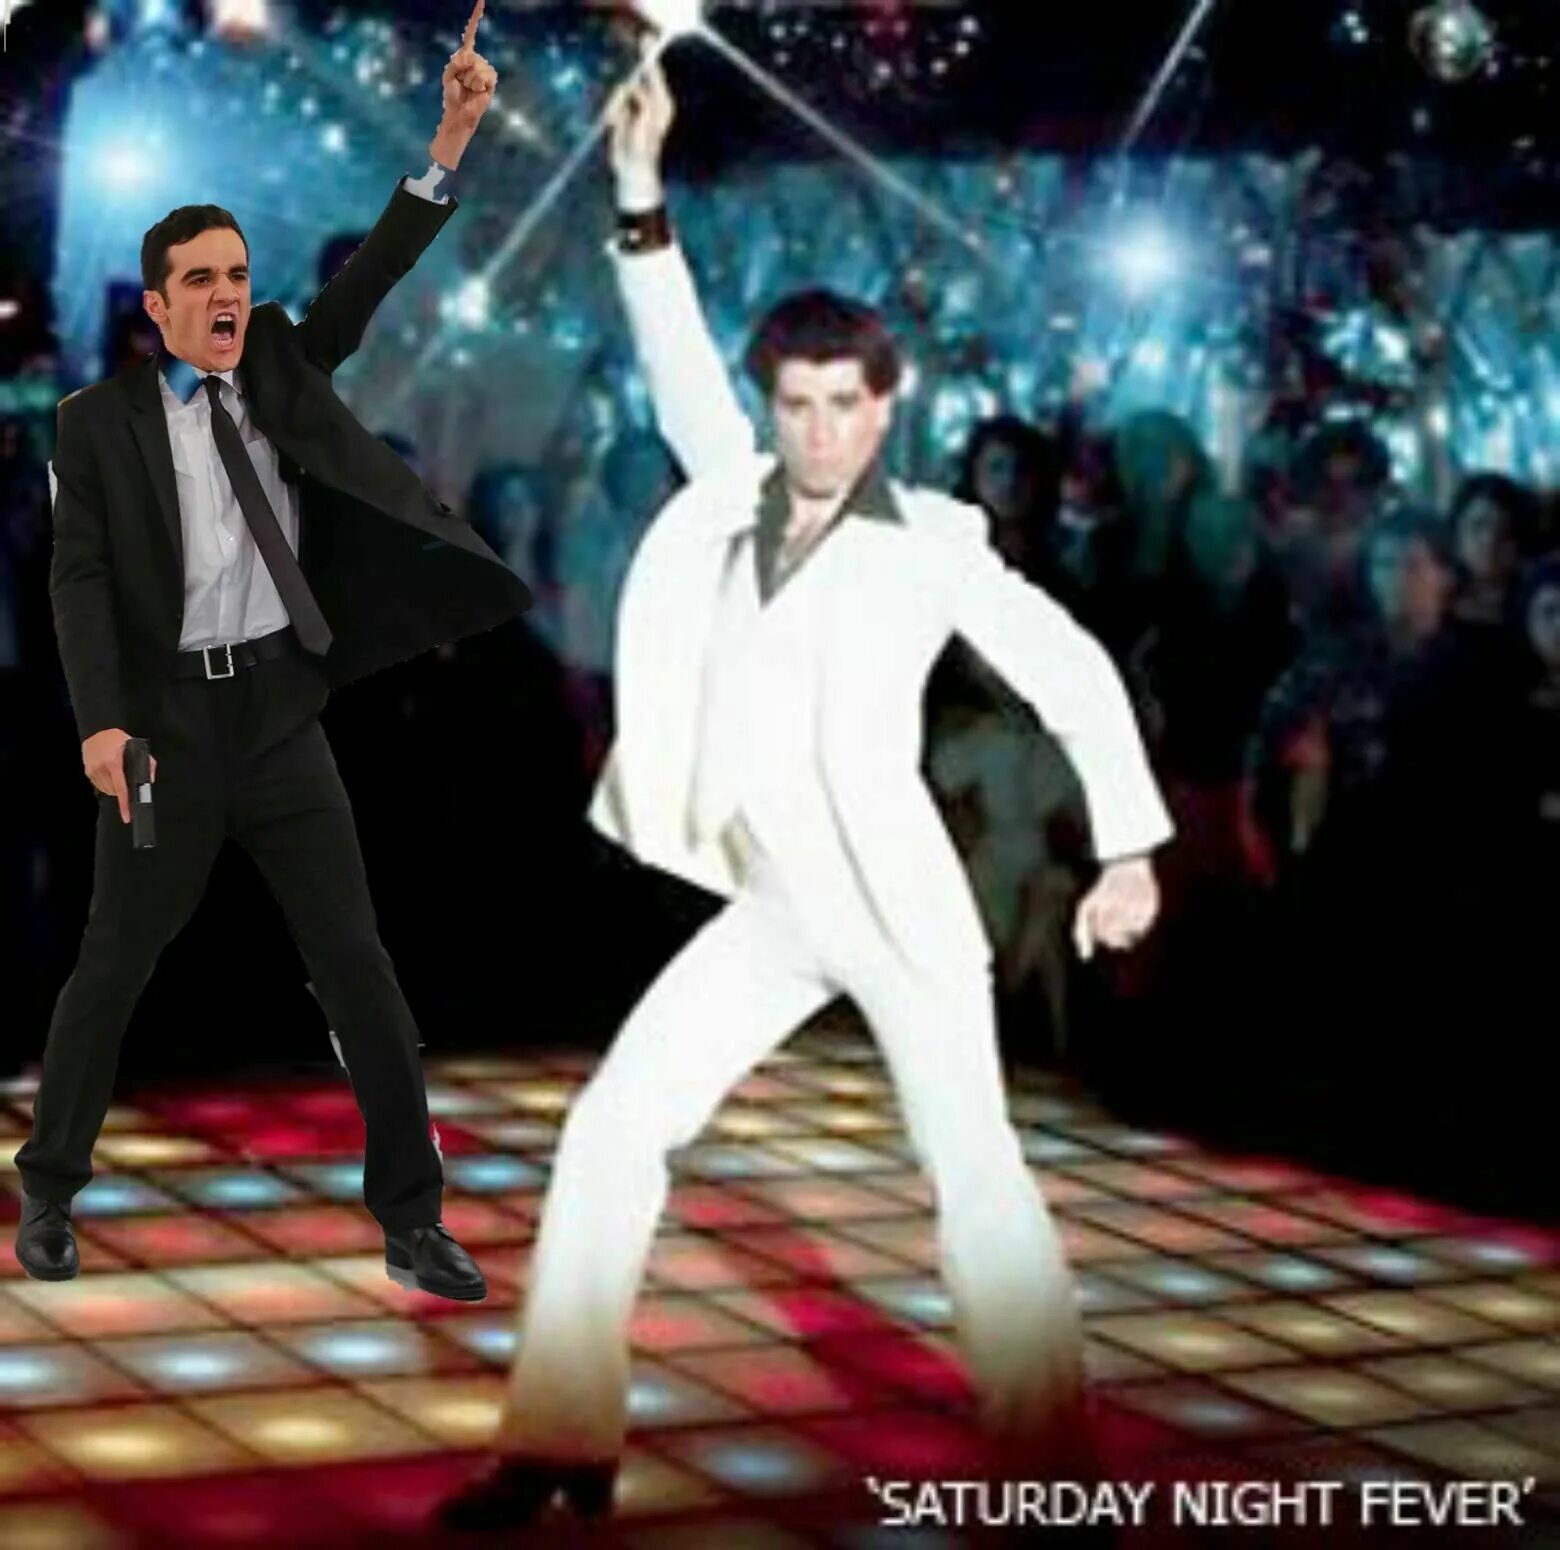 Saturday Night Fever Траволта. Джон Траволта диско. Траволта Saturday Night Fever танец. Джон Траволта танцор диско. Песня на дискач выходит танцевать